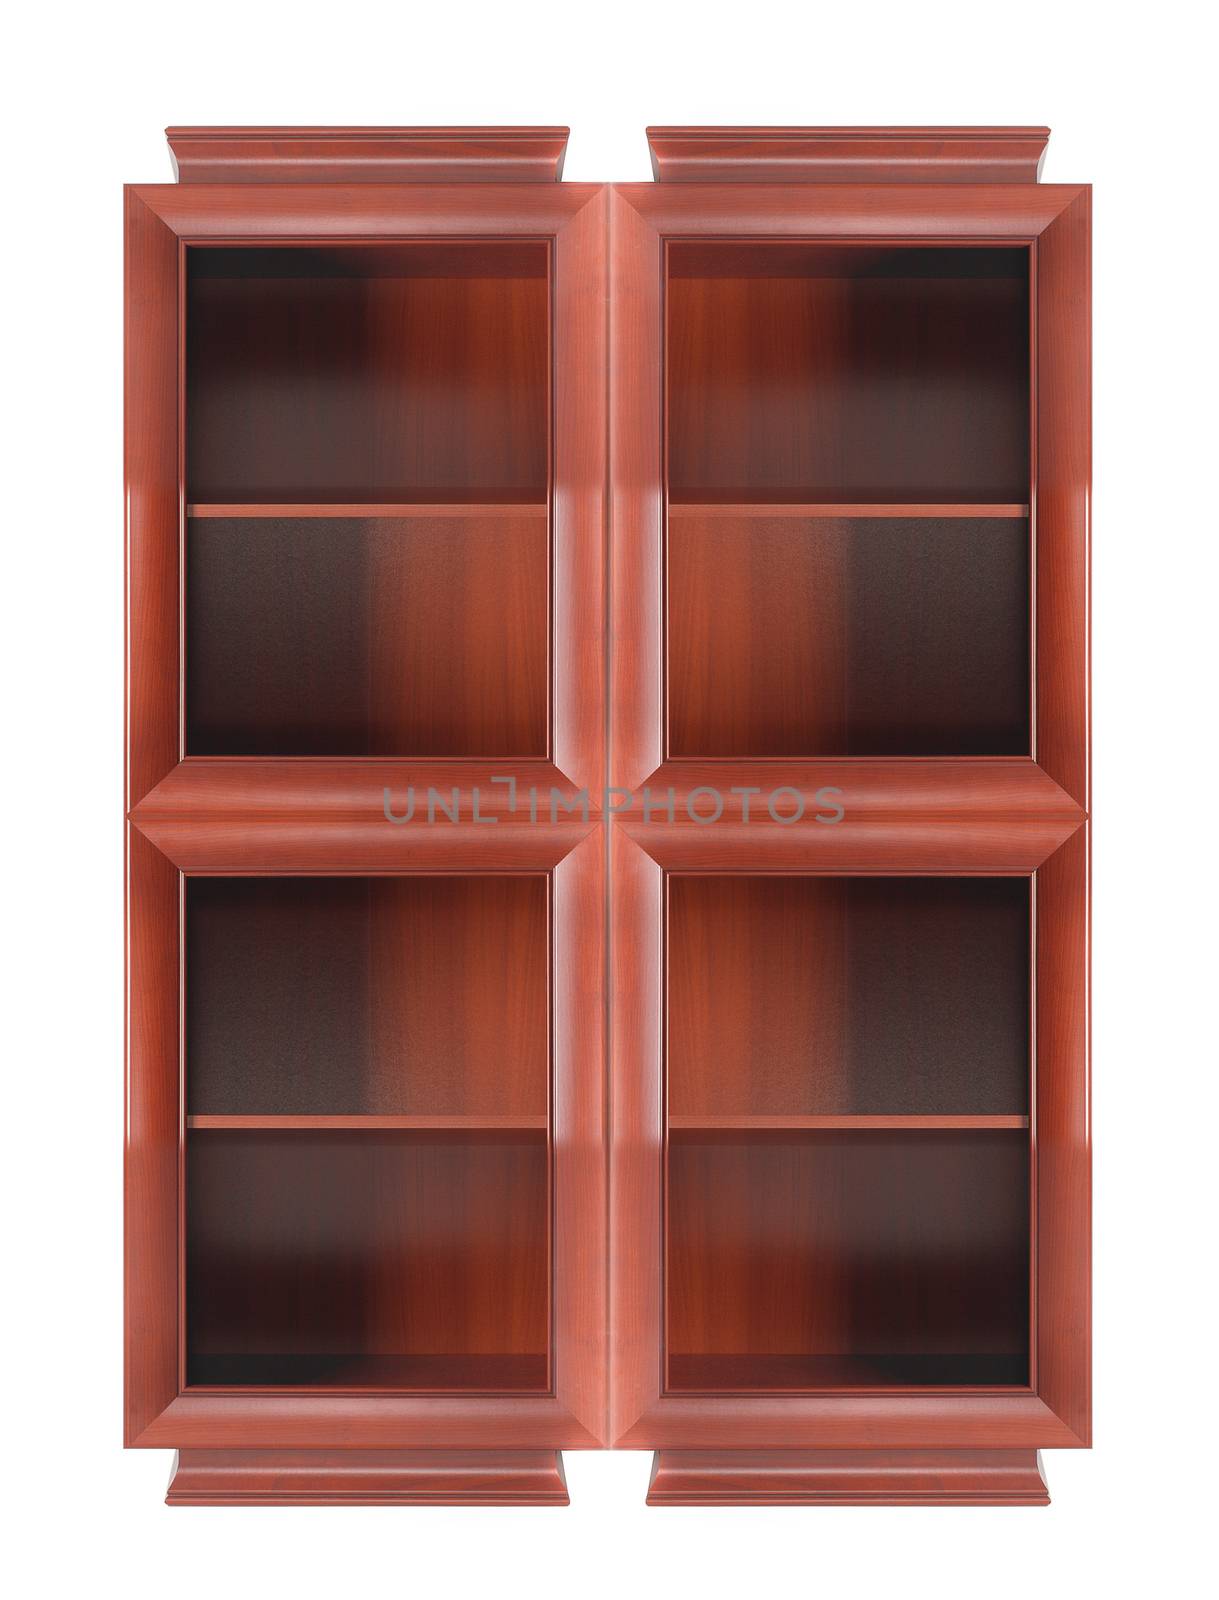 bookcase by ozaiachin